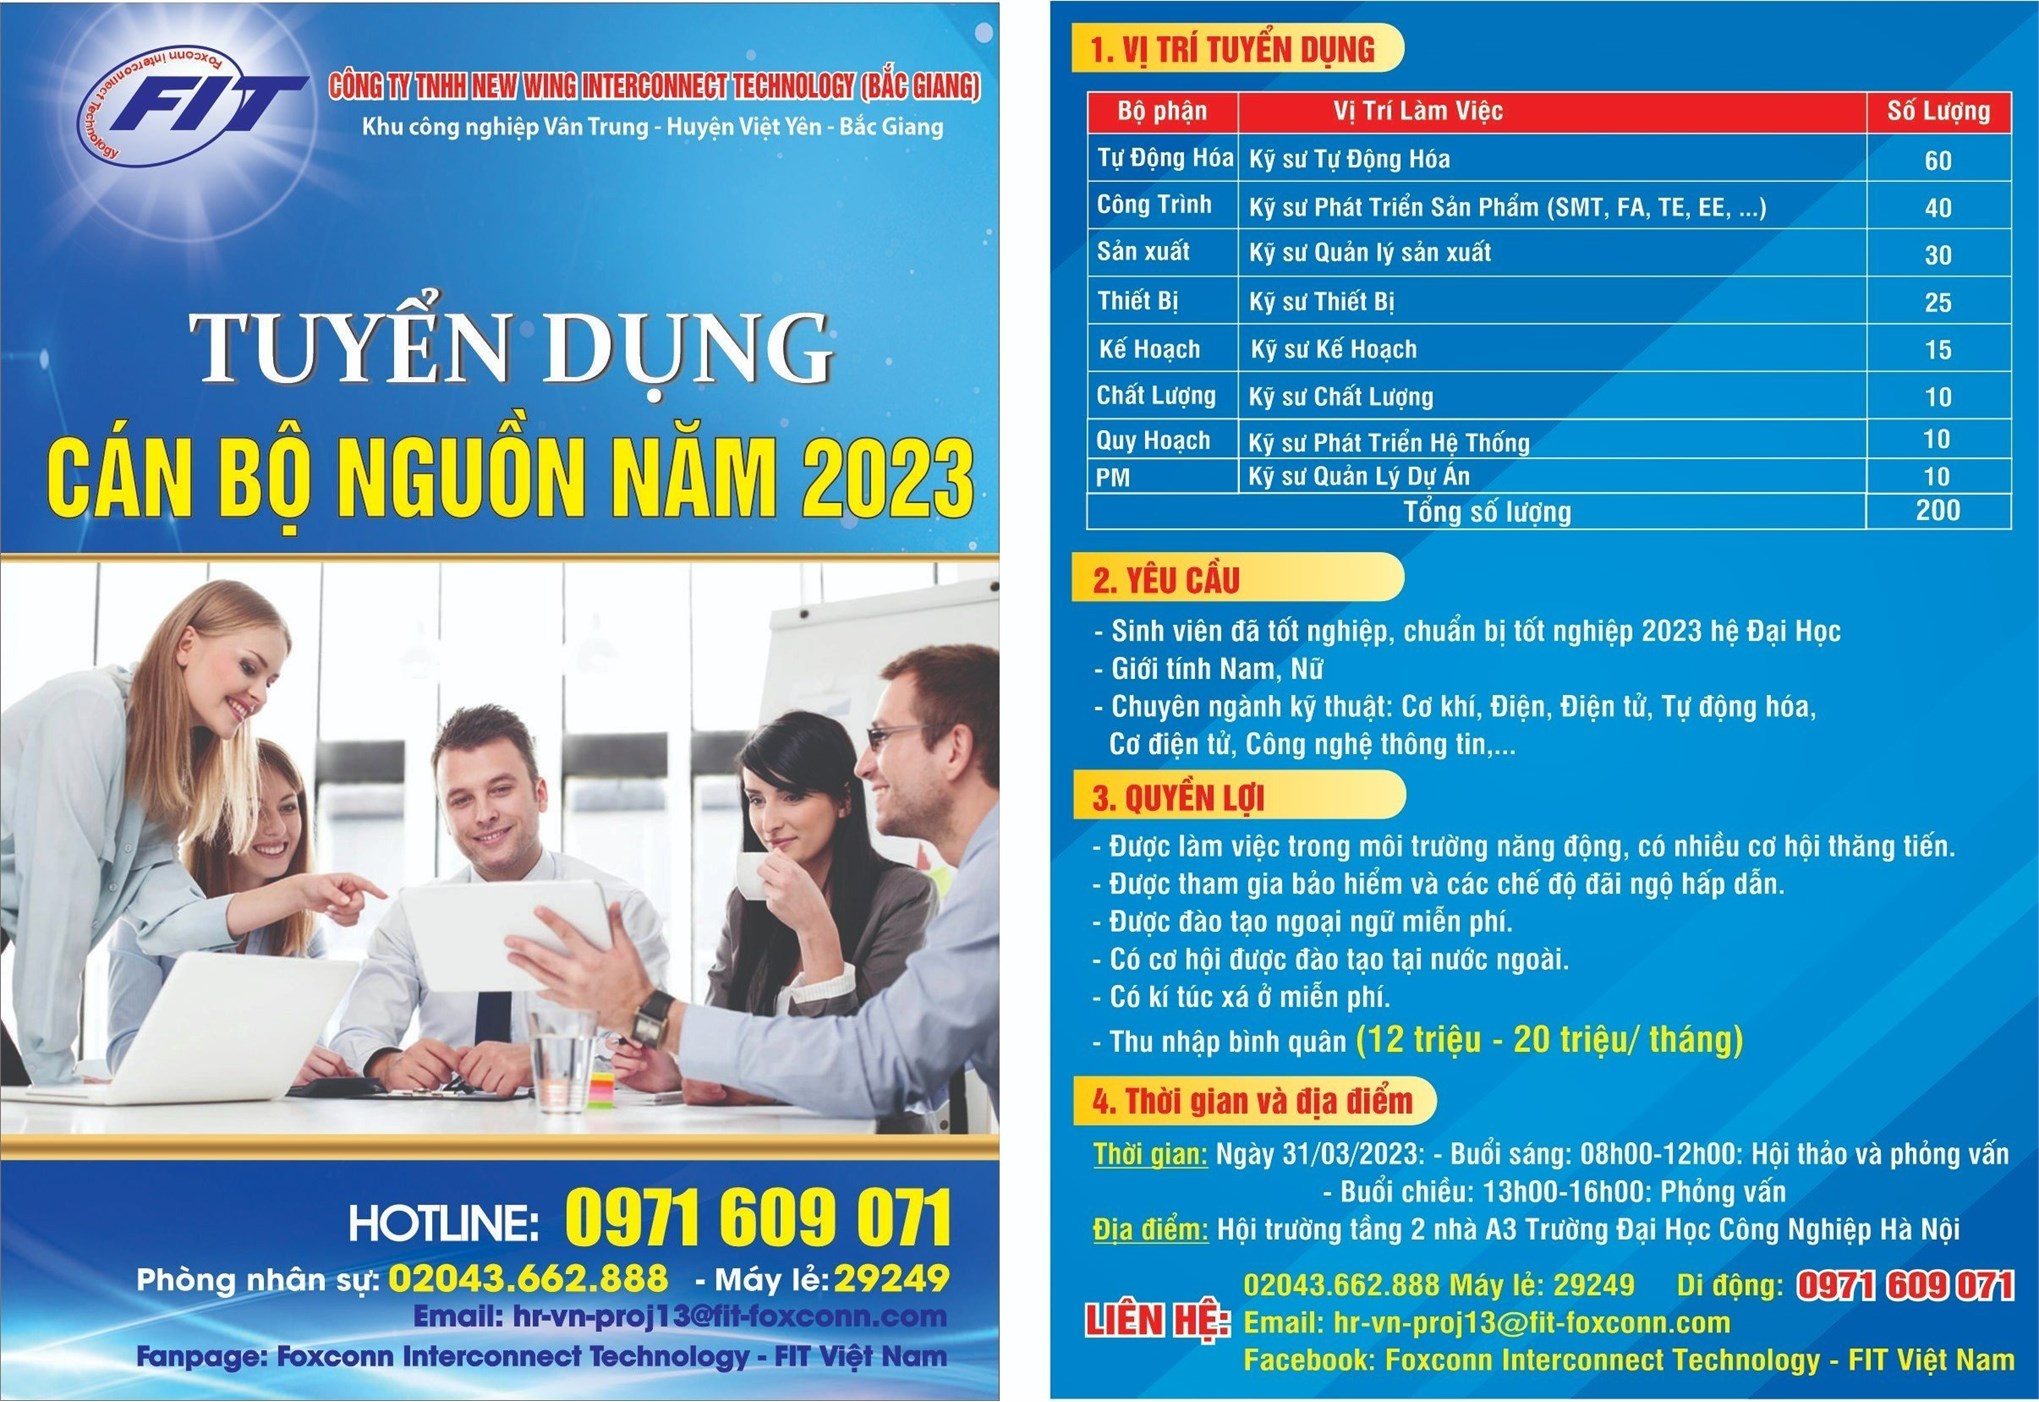 Hội thảo việc làm và tuyển dụng trực tiếp của Công ty TNHH New Wing Interconnect Technology (Bắc Giang) – Thứ 6, ngày 31/03/2023.